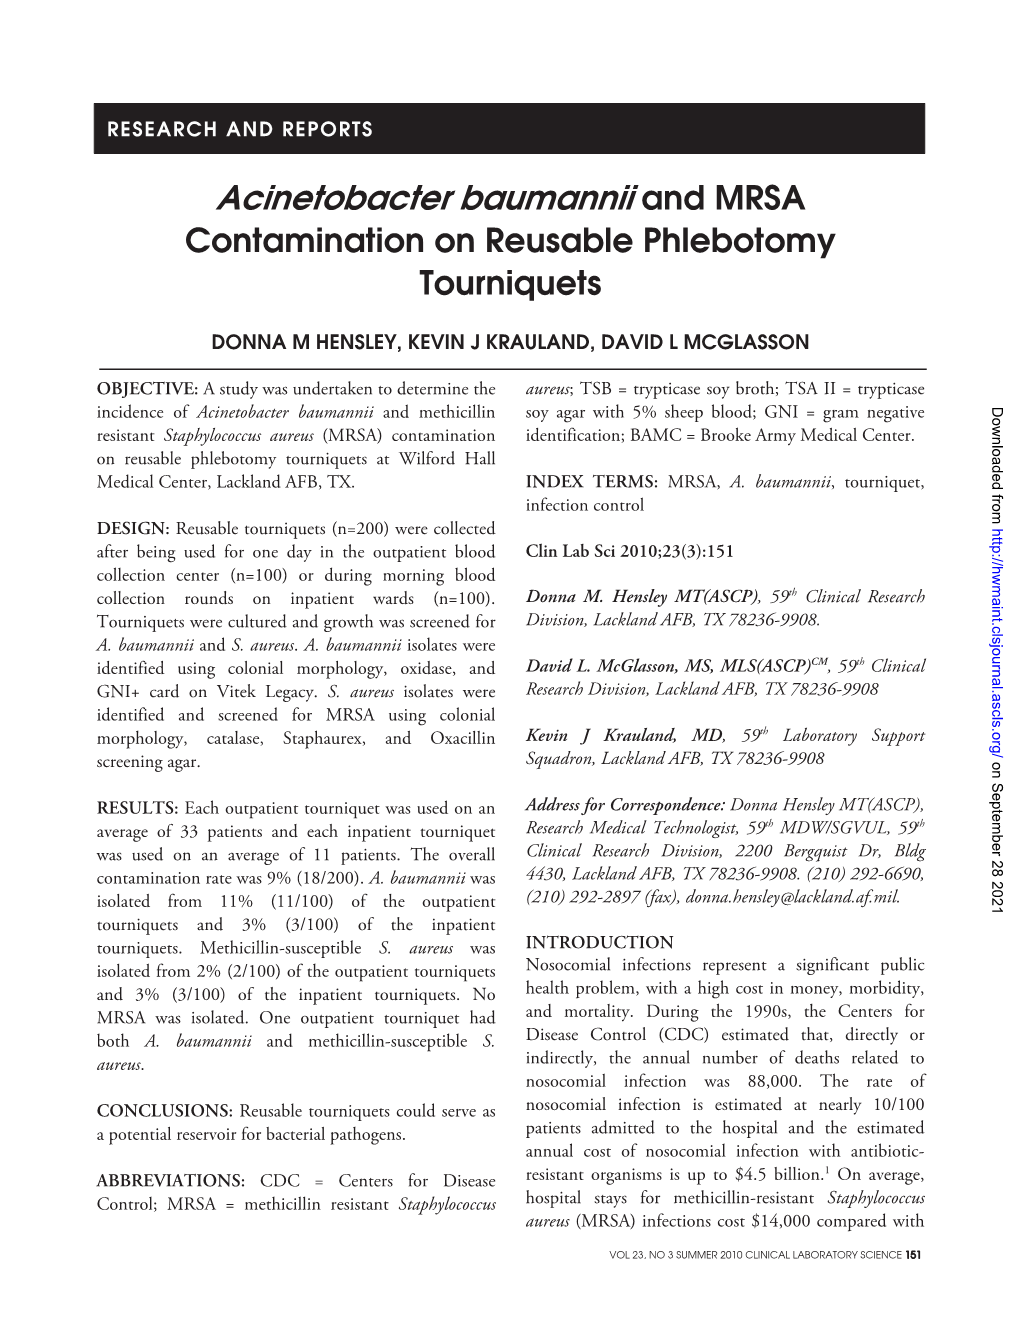 Acinetobacter Baumannii and MRSA Contamination on Reusable Phlebotomy Tourniquets